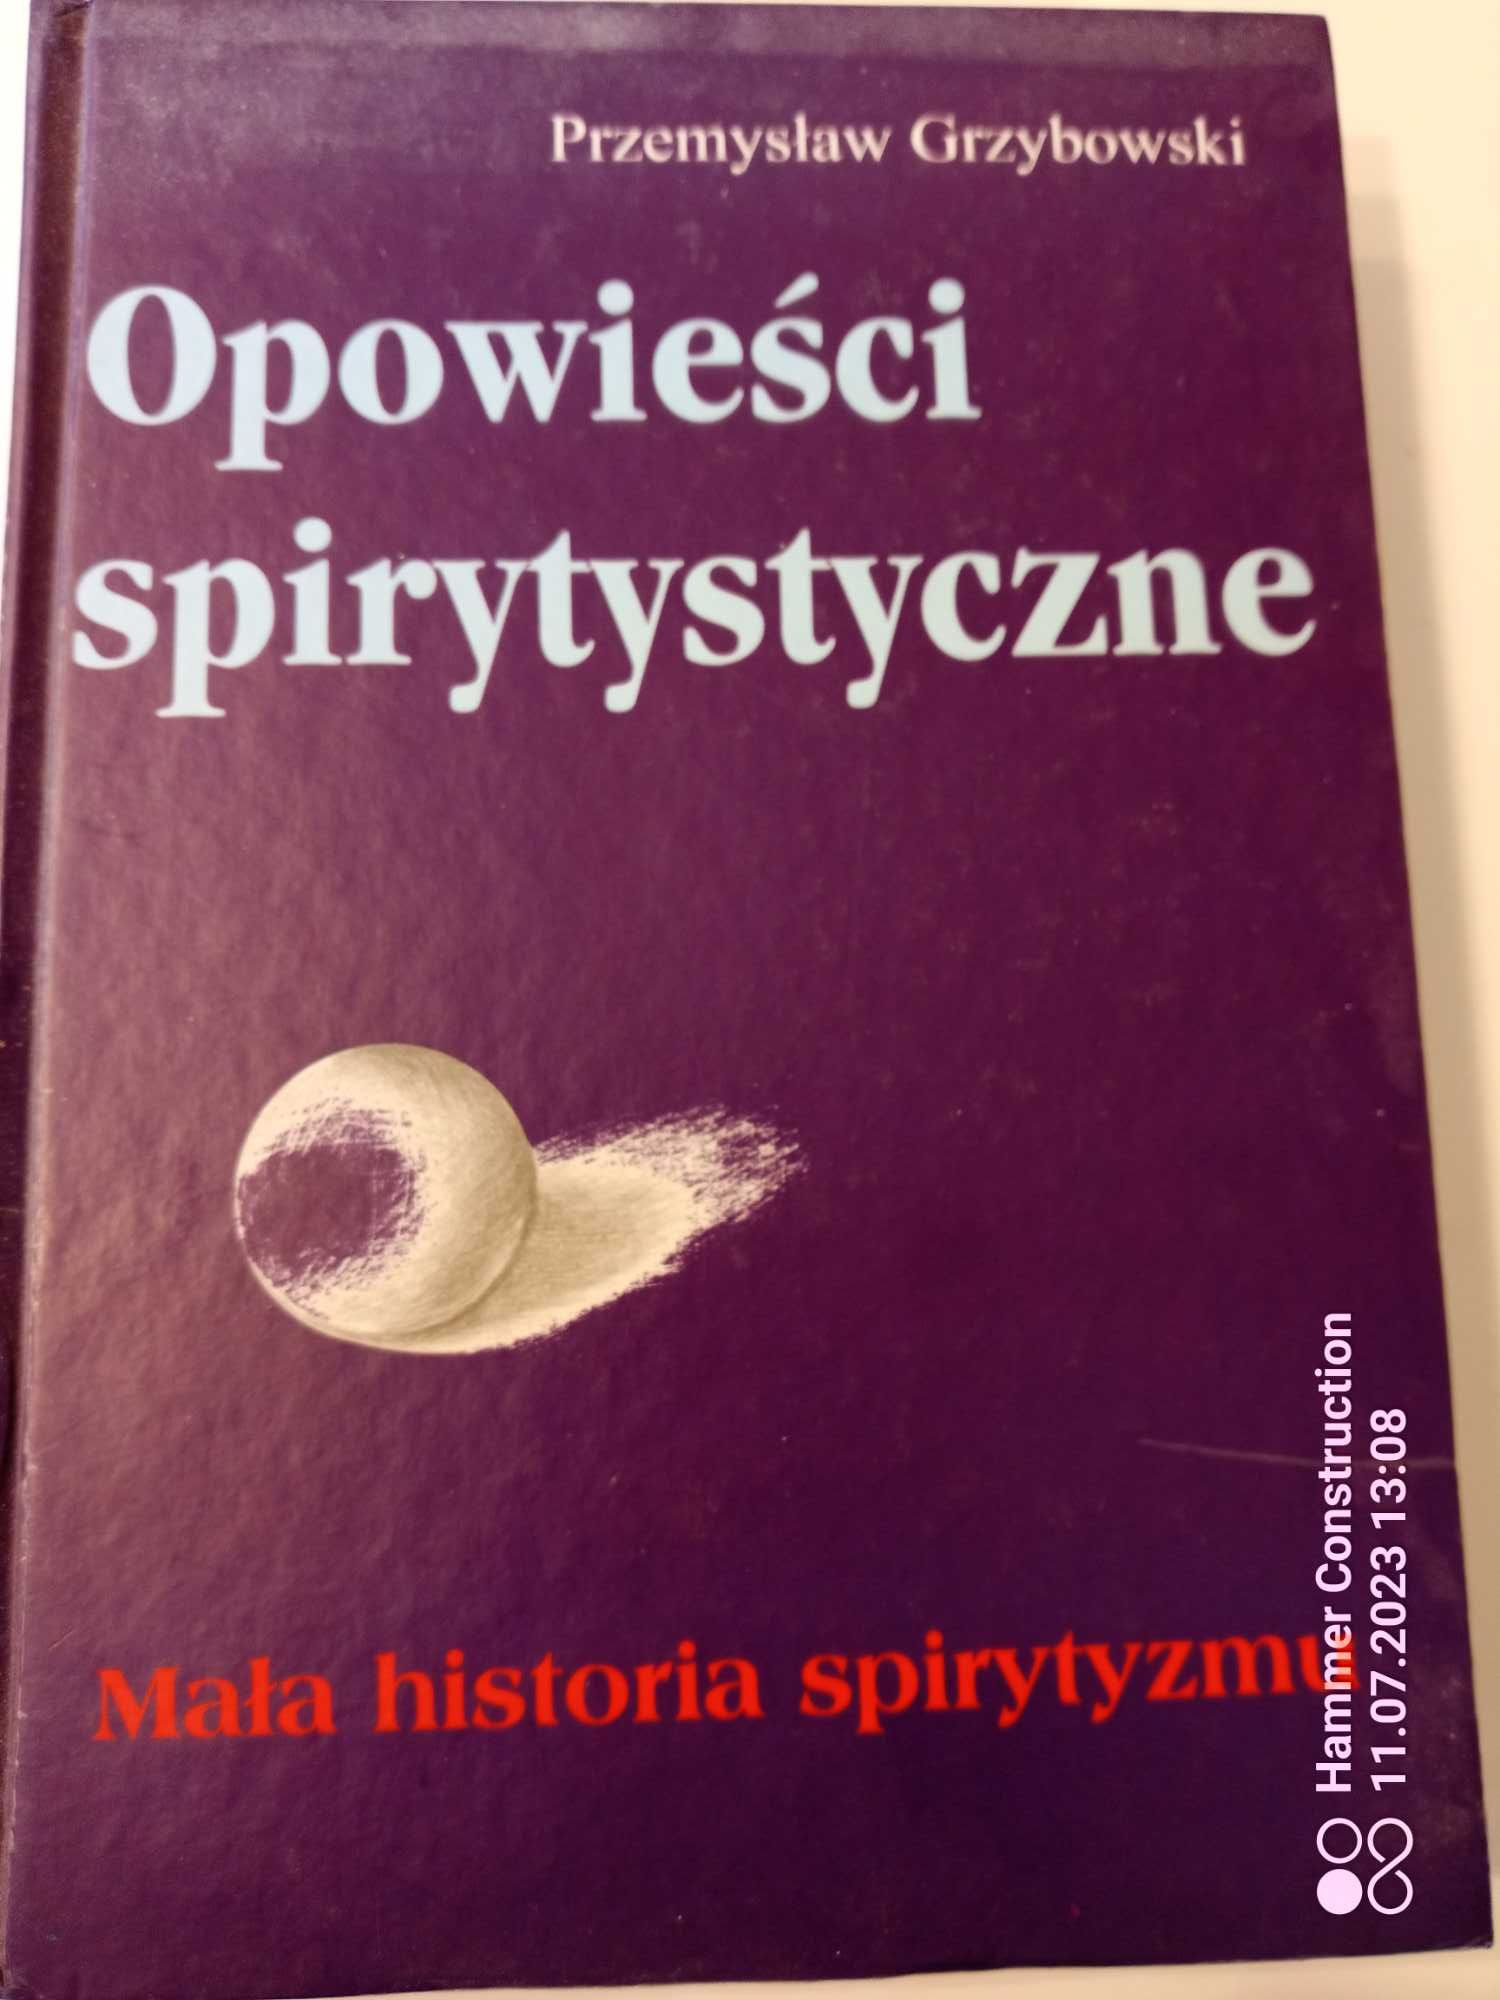 Opowieści spirytystyczne ,Przemysław Grzybowski , 1999